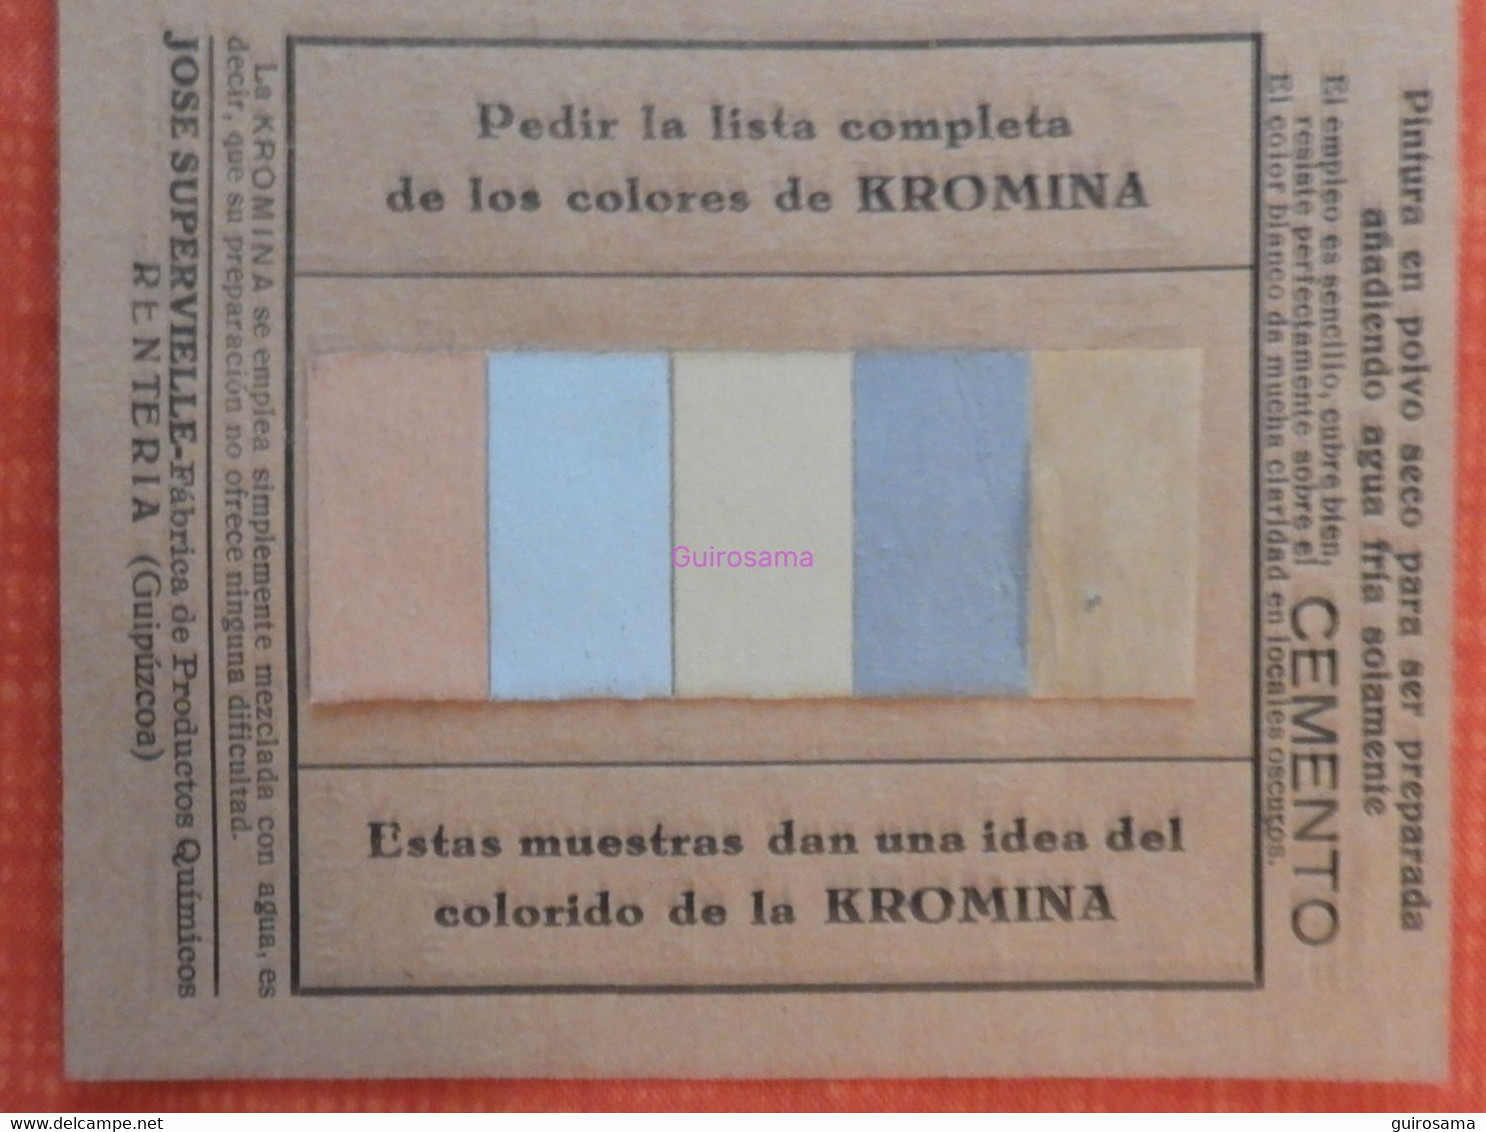 La Kromina – Pintura En Polvo – José Supervielle – Renteria (Guipuzcoa) - 1935 - Avec échantillon - Peintures En Poudre - Espagne